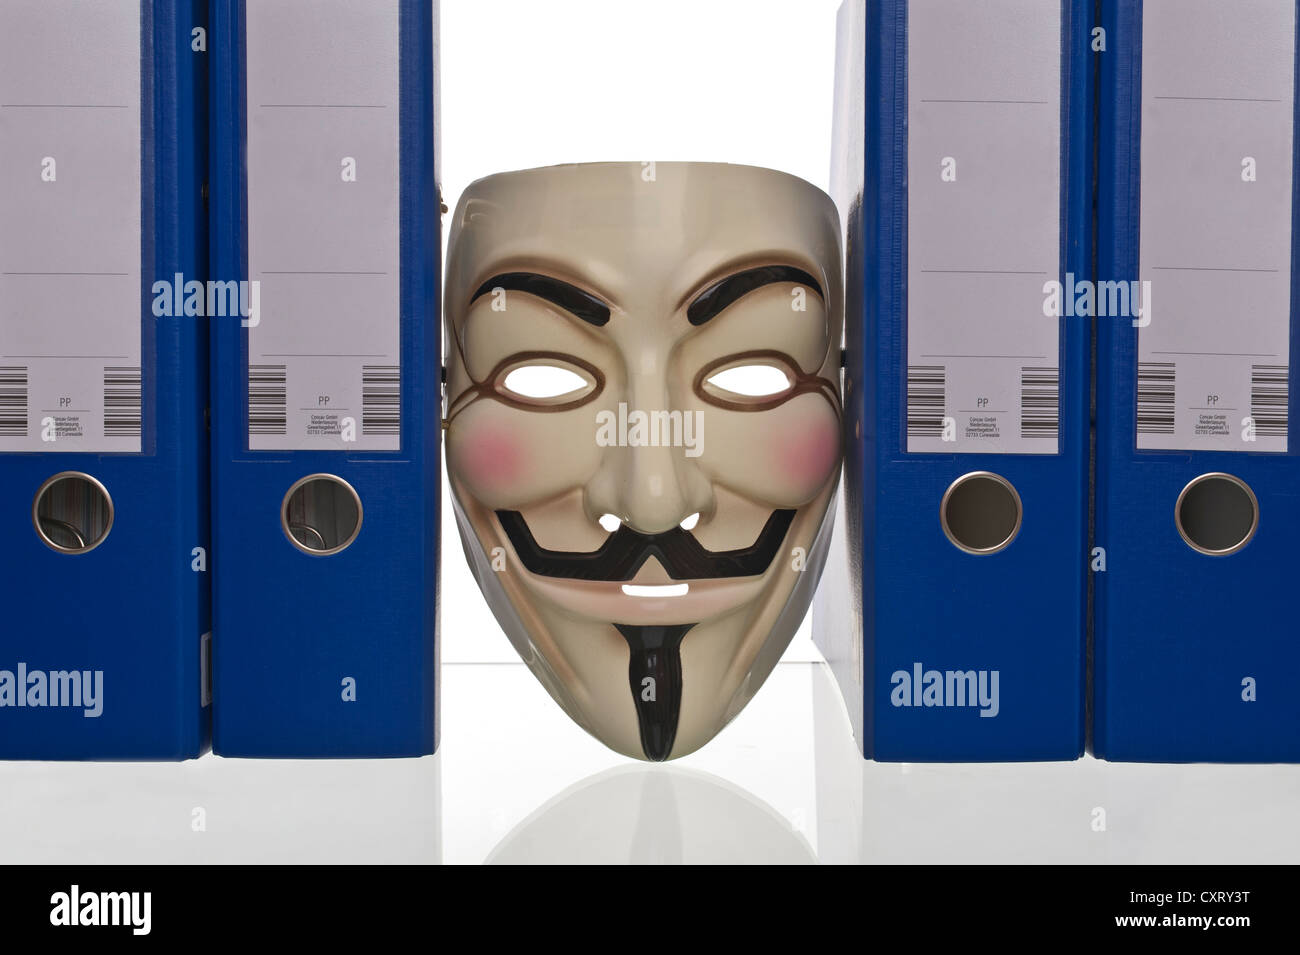 "Anonyme", Guy Fawkes ou 'V pour Vendetta' masque, coincé entre les dossiers sans label bleu Banque D'Images